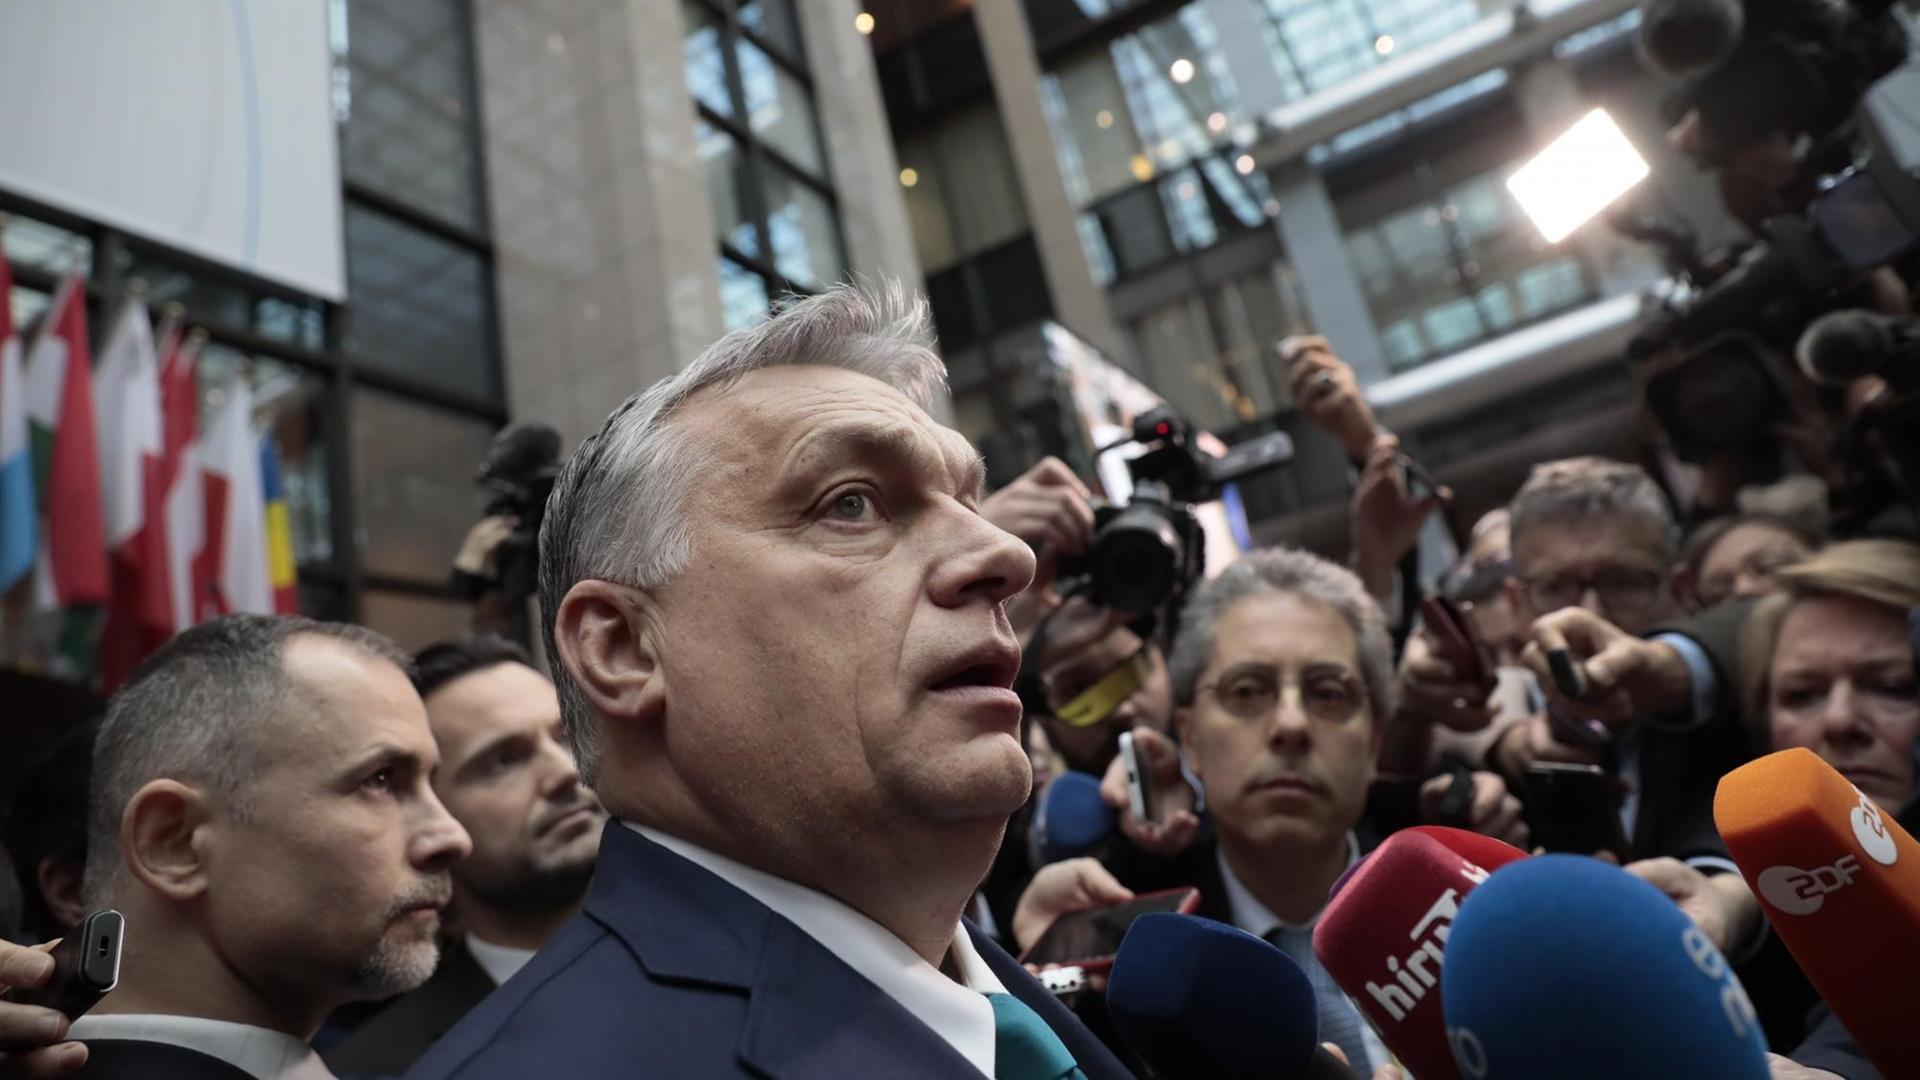 Der ungarische Premierminister Viktor Orban wird während eines EU-Gipfels dicht umringt von Kameraleuten und Jounalisten.